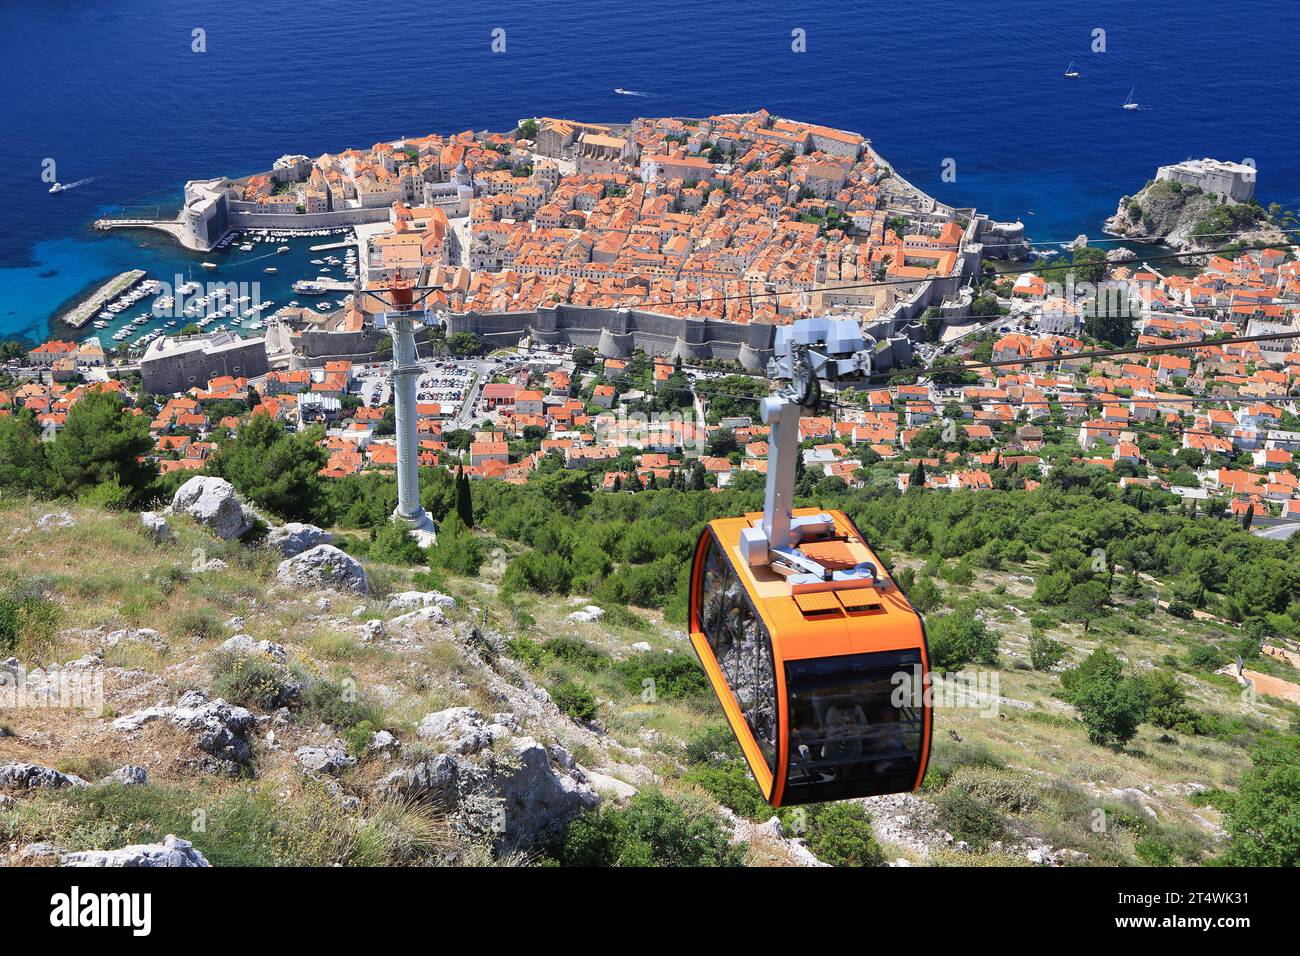 Vue aérienne de la vieille ville de Dubrovnik sur la côte de la mer Adriatique avec le téléphérique au premier plan, Croatie, Europe Banque D'Images